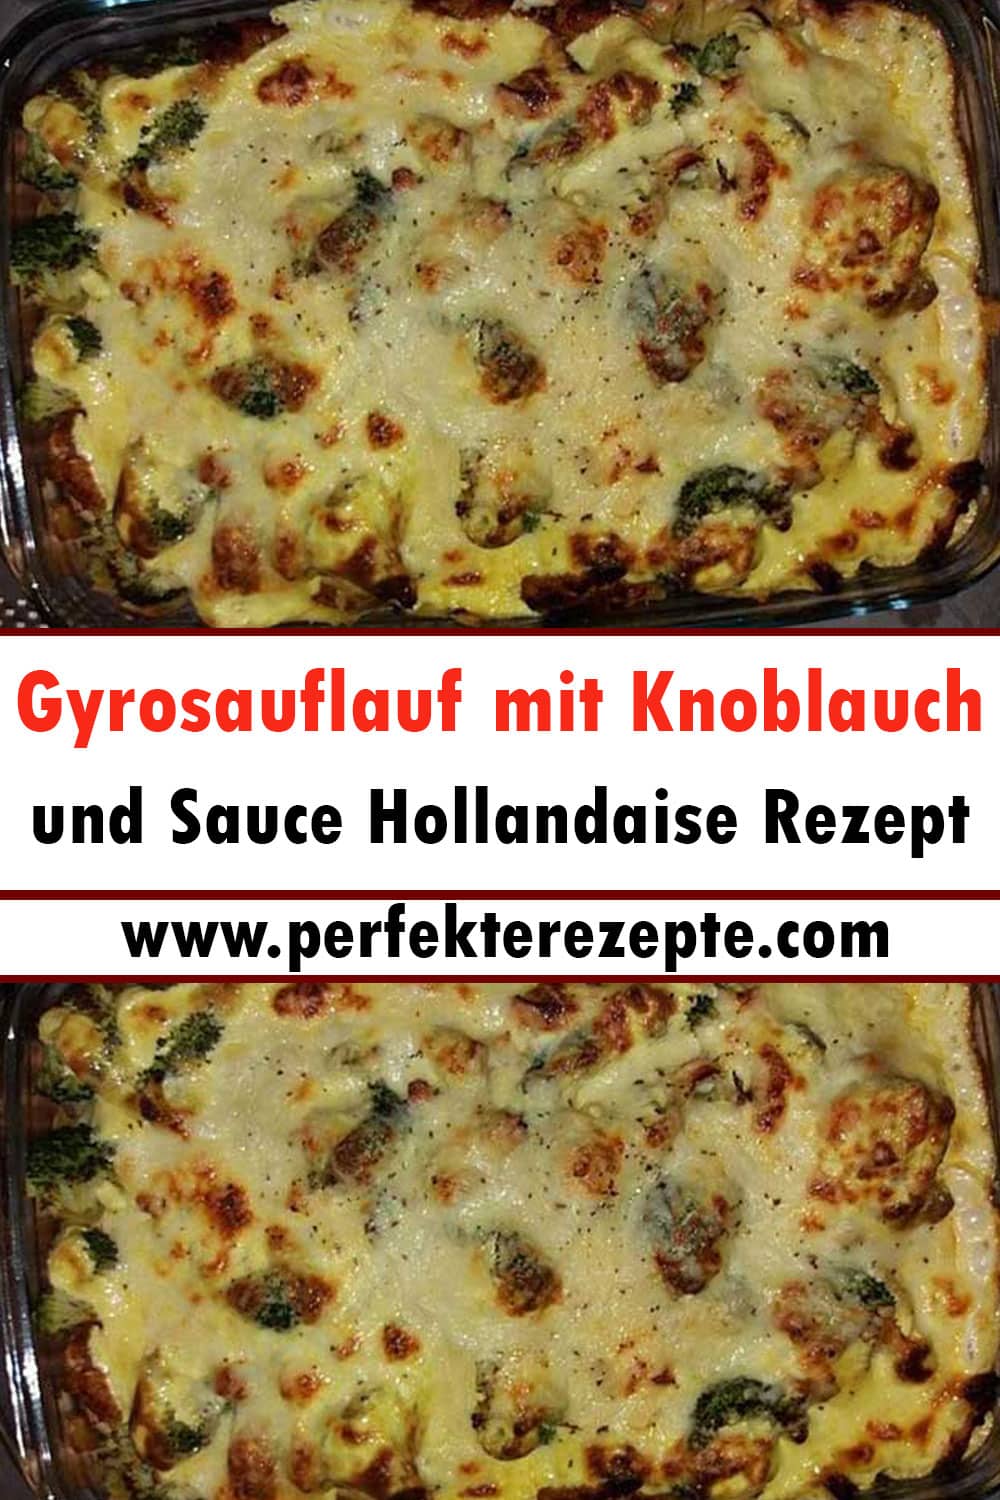 Gyrosauflauf mit Knoblauch und Sauce Hollandaise Rezept